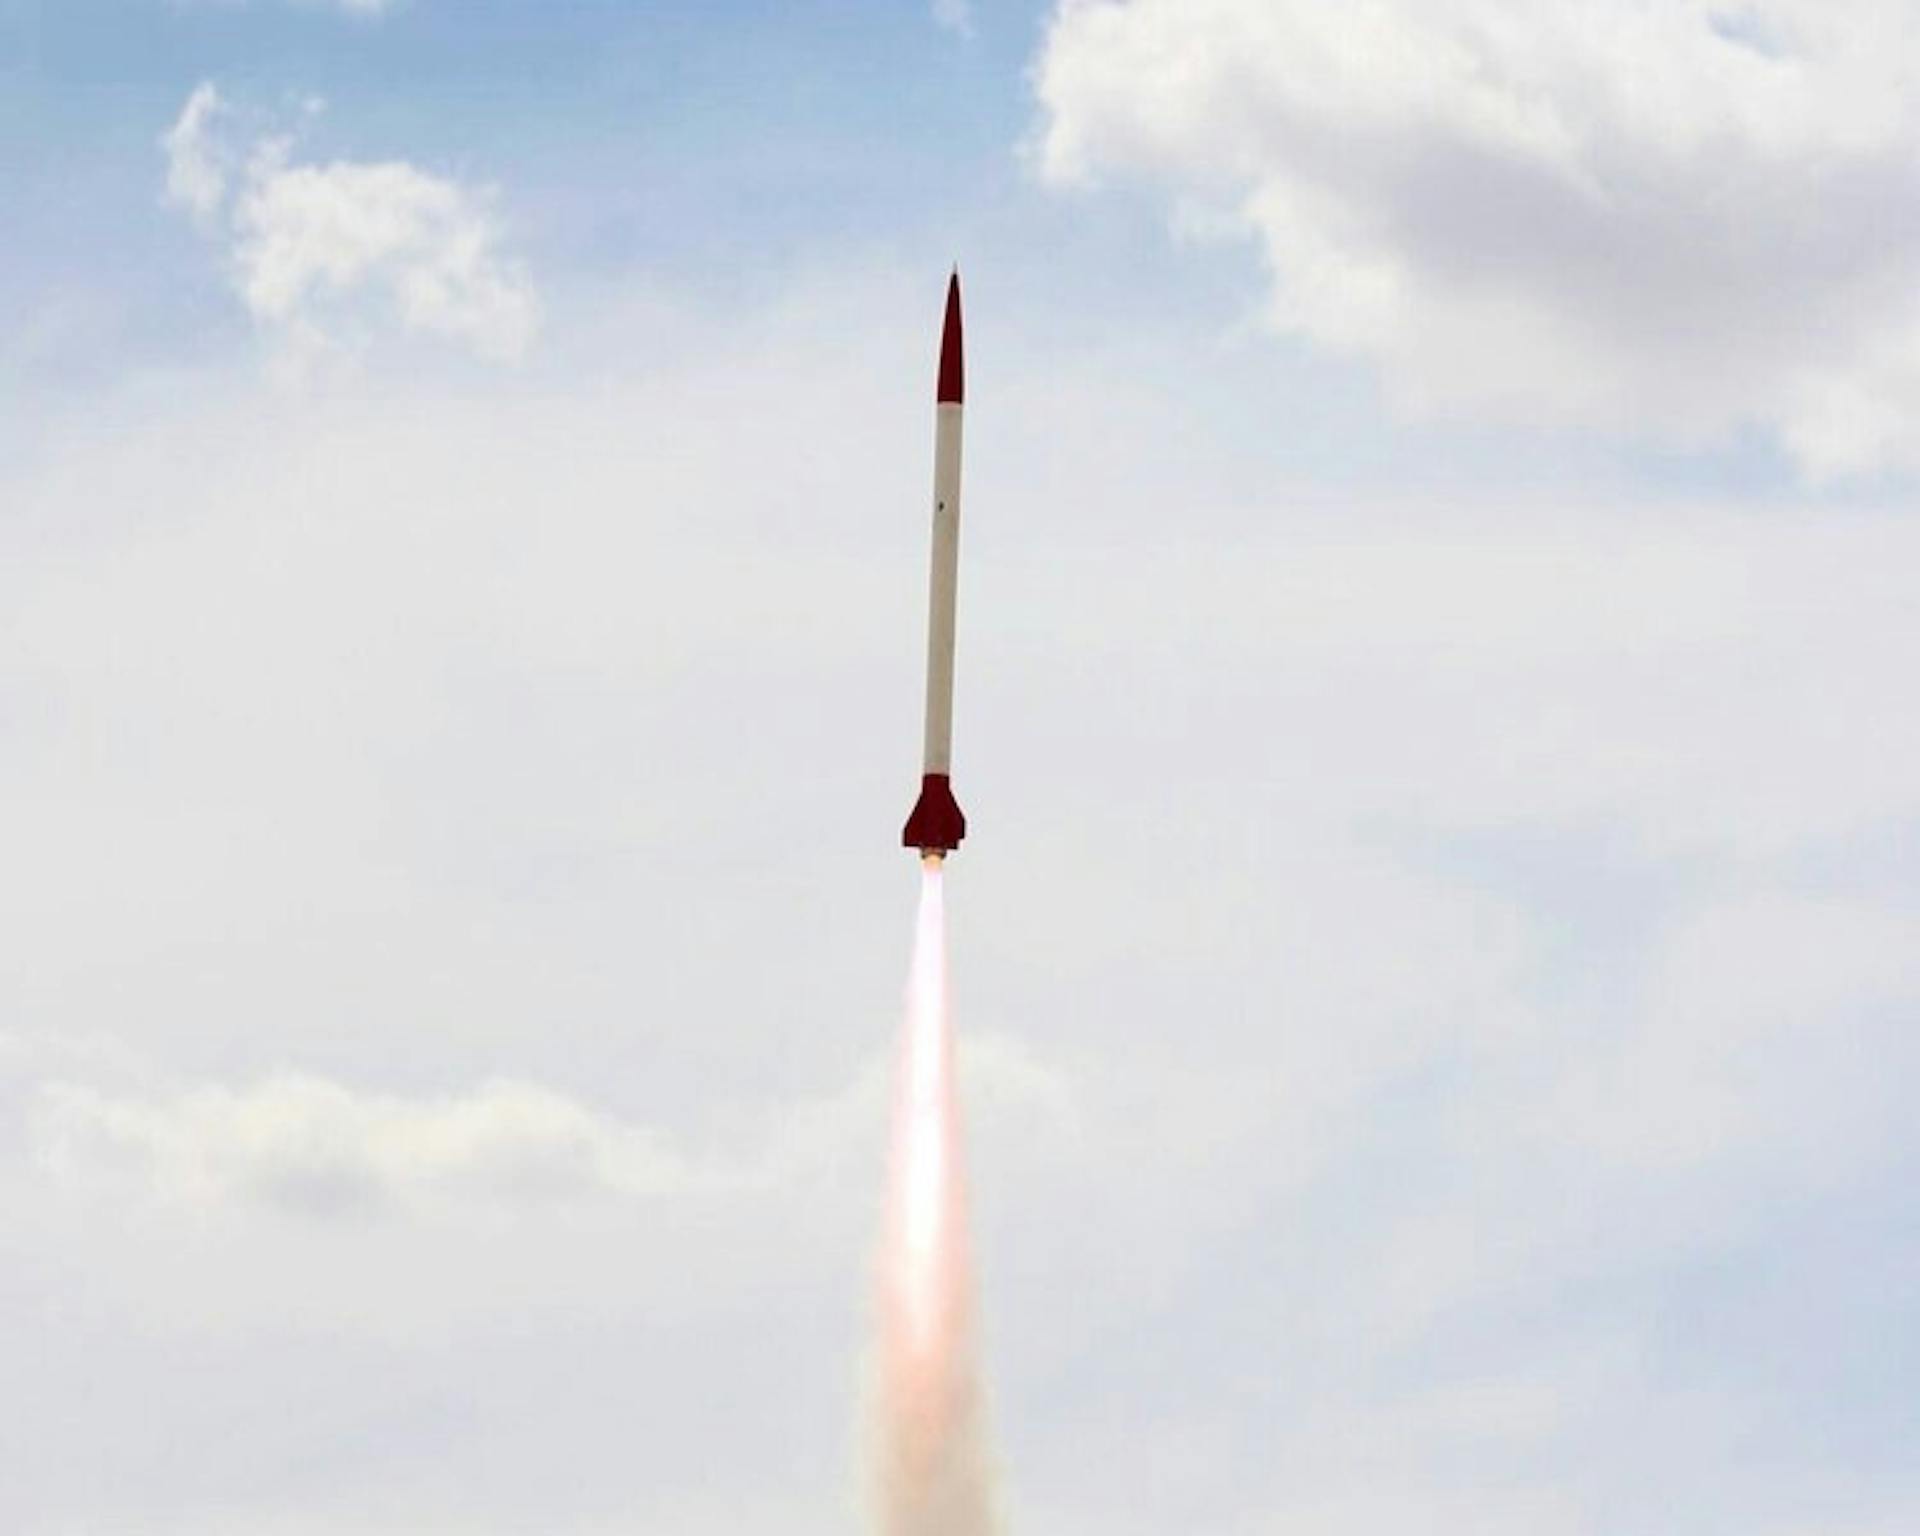 O Hermes I foi lançado com sucesso a 32.000 pés e foi recuperado nominalmente.